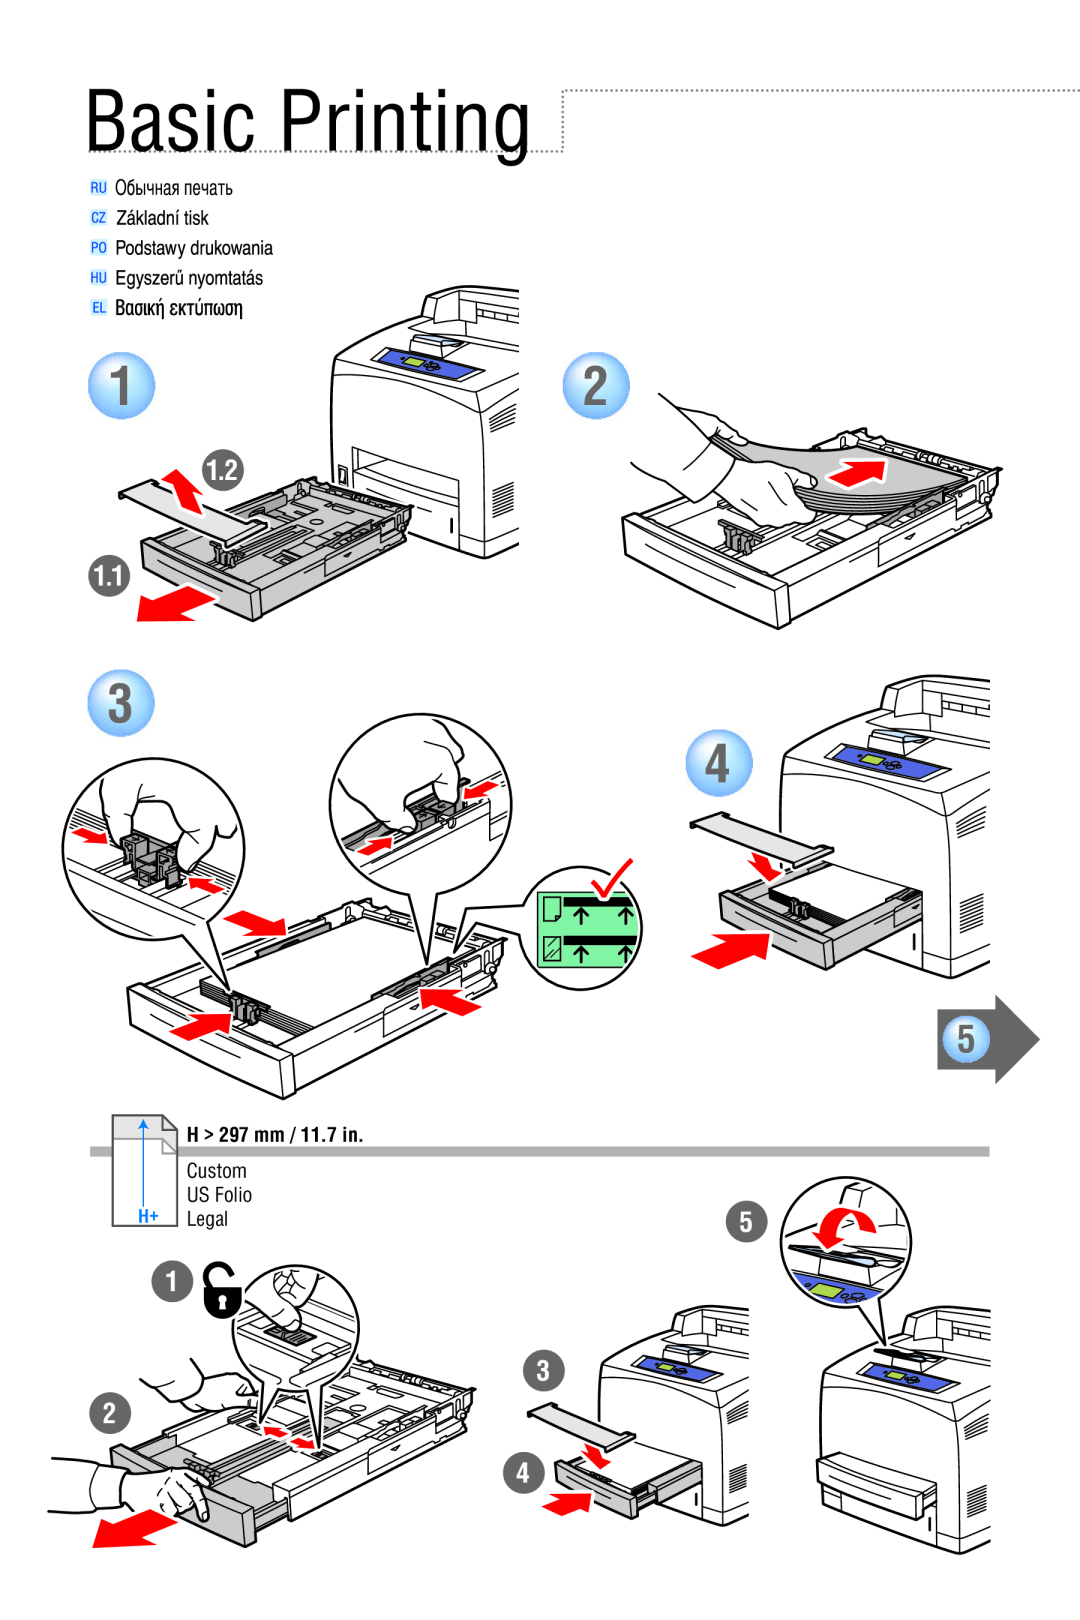 Xerox 4500 manual Basic Printing, 1.2 1.1, H 297 mm / 11.7 in 